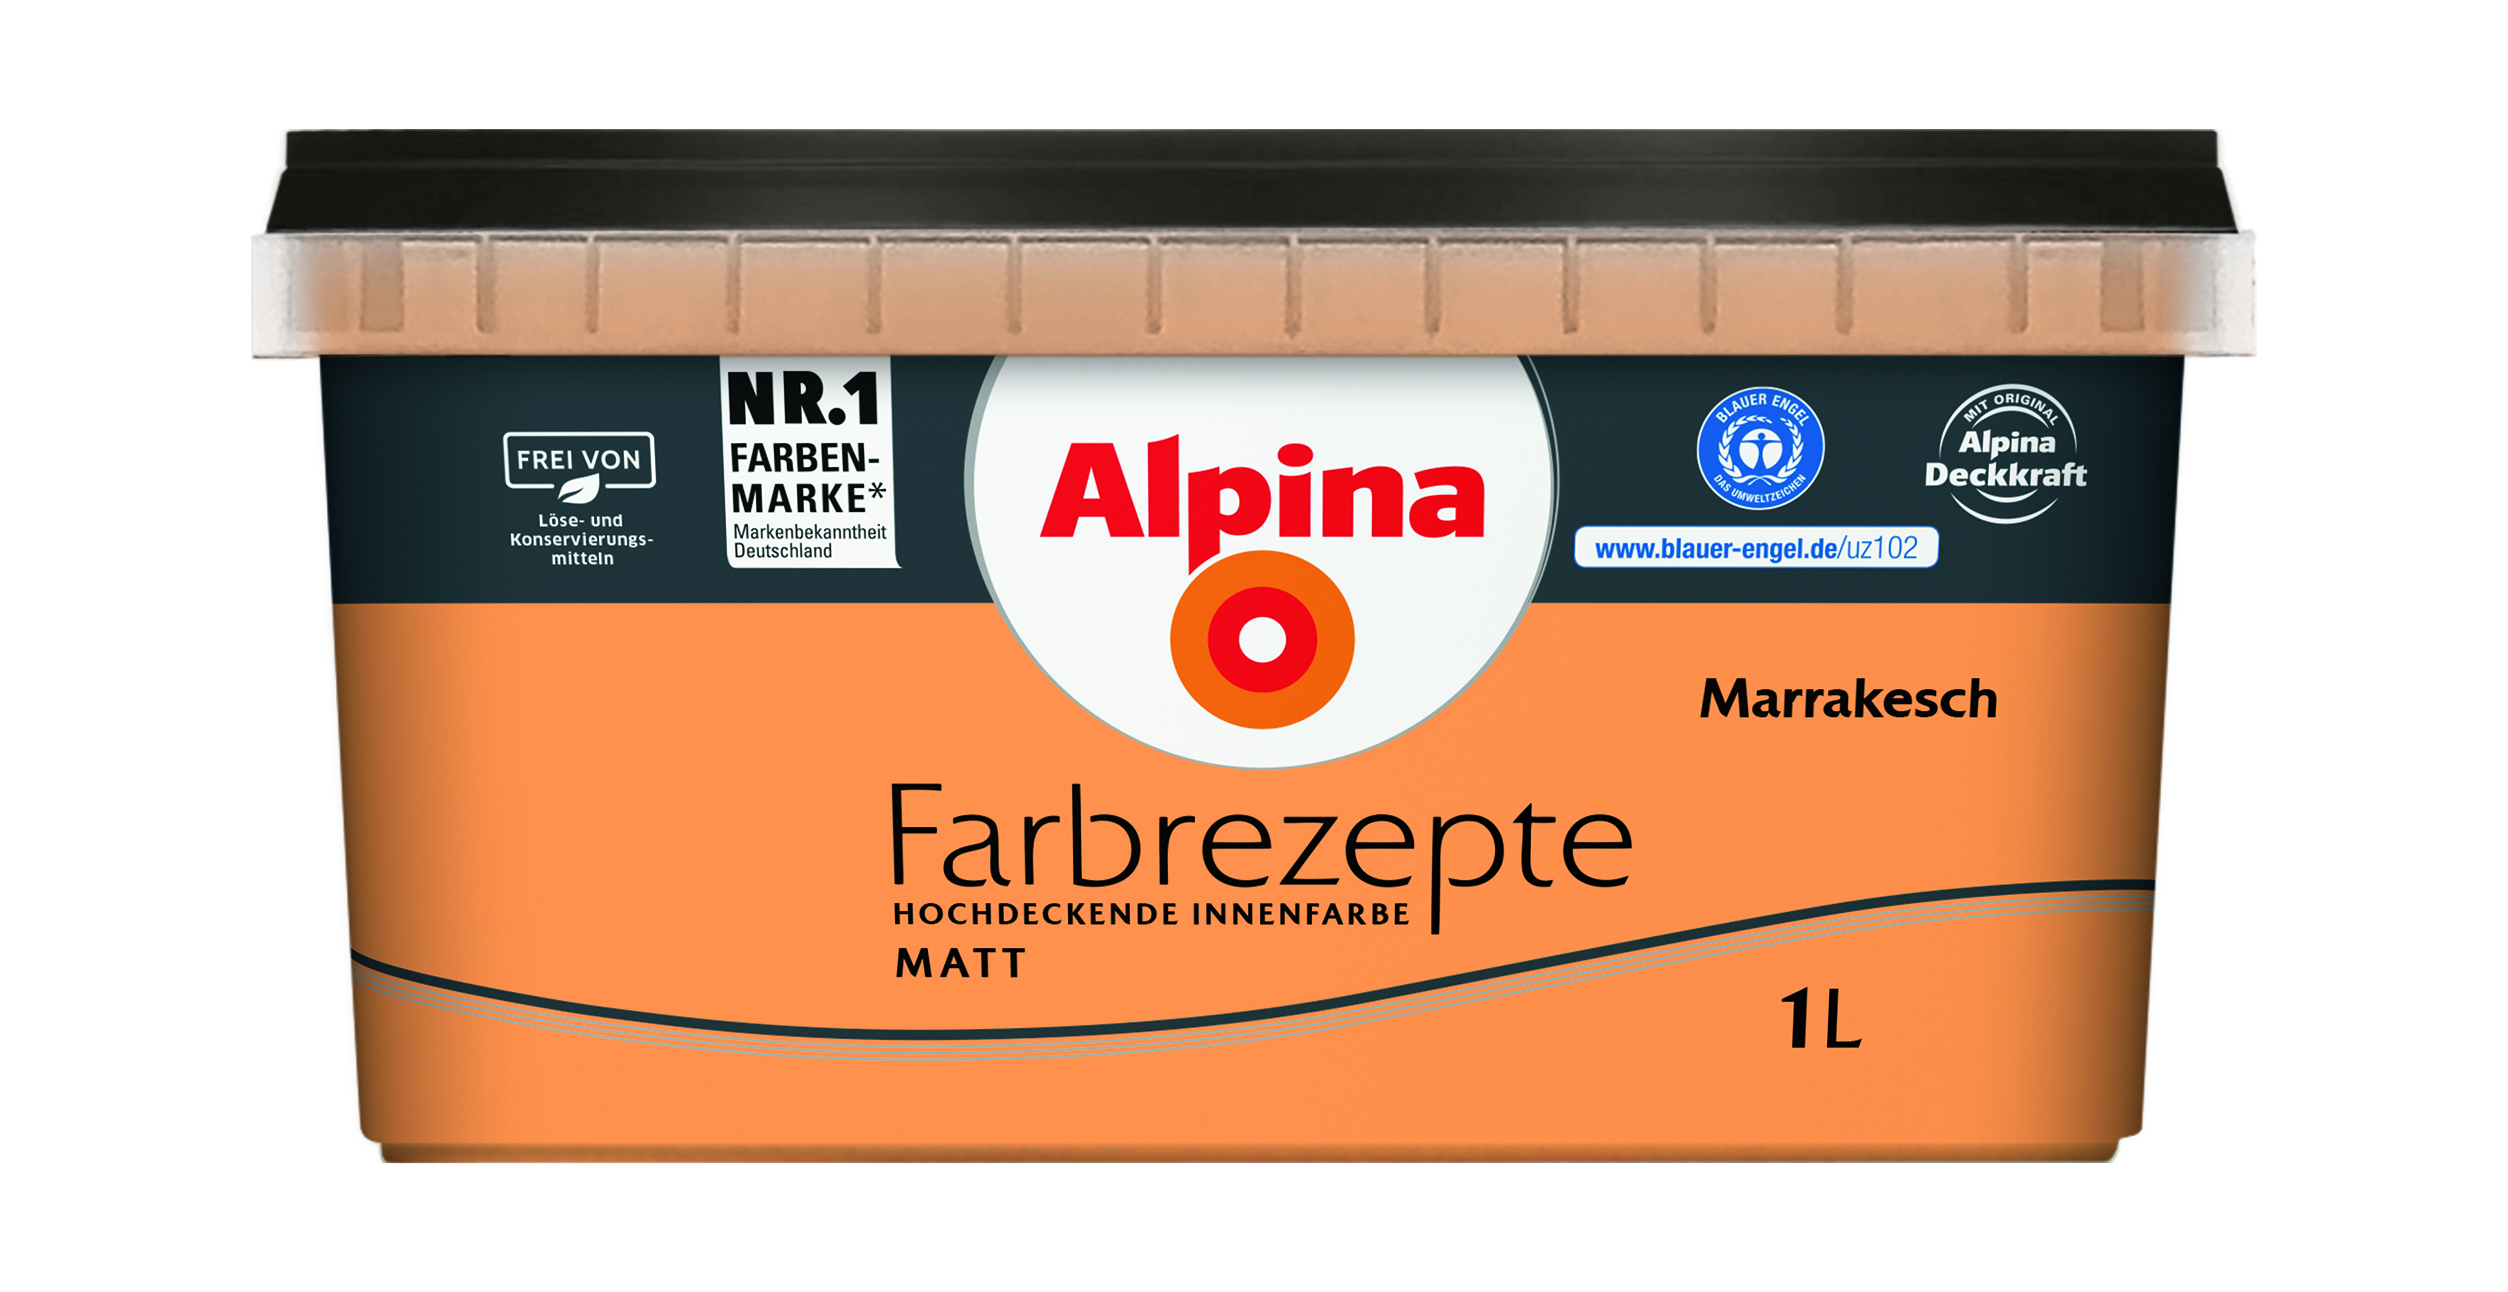 Alpina Farbrezepte Marrakesch, 1L